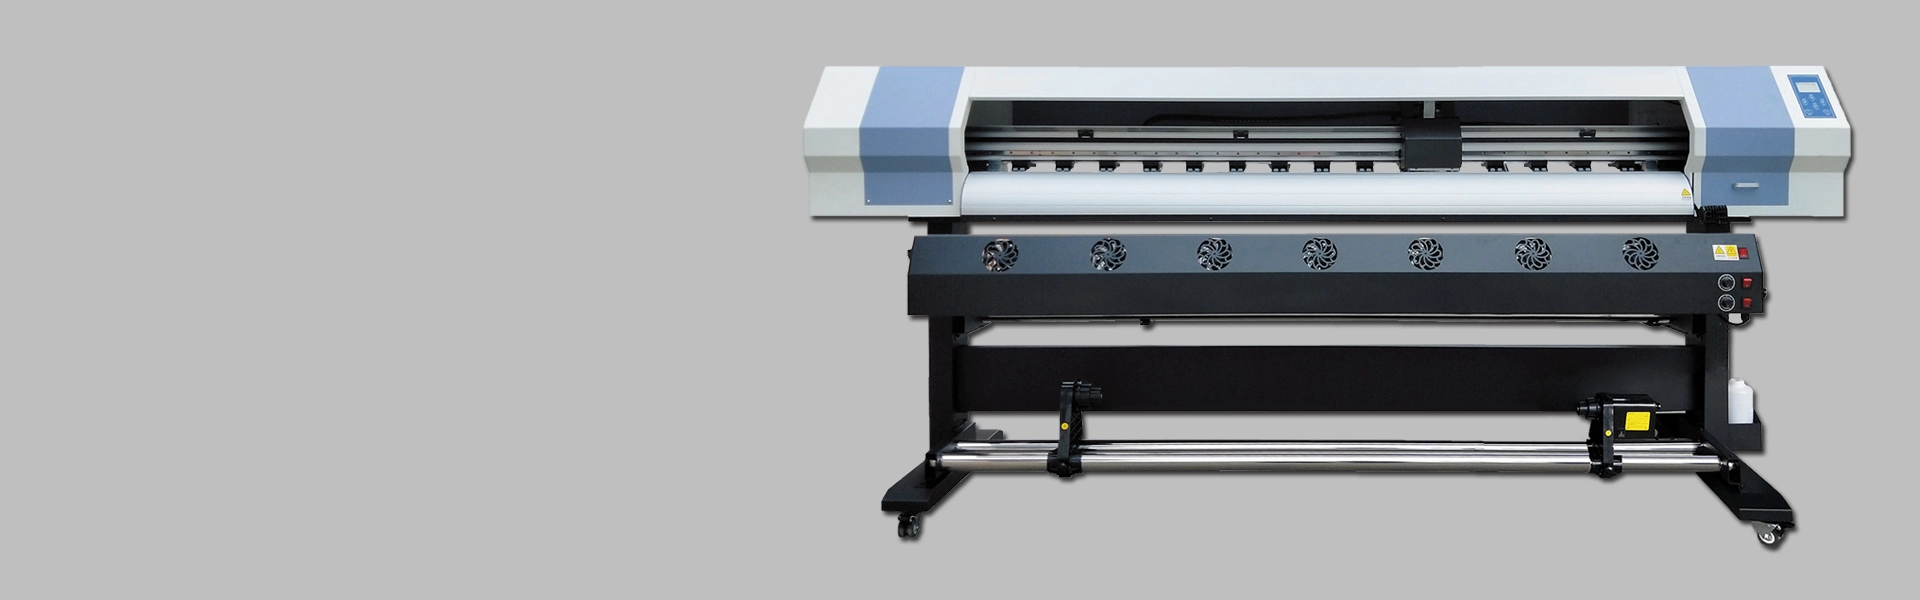 1,6-метровый принтер XP600